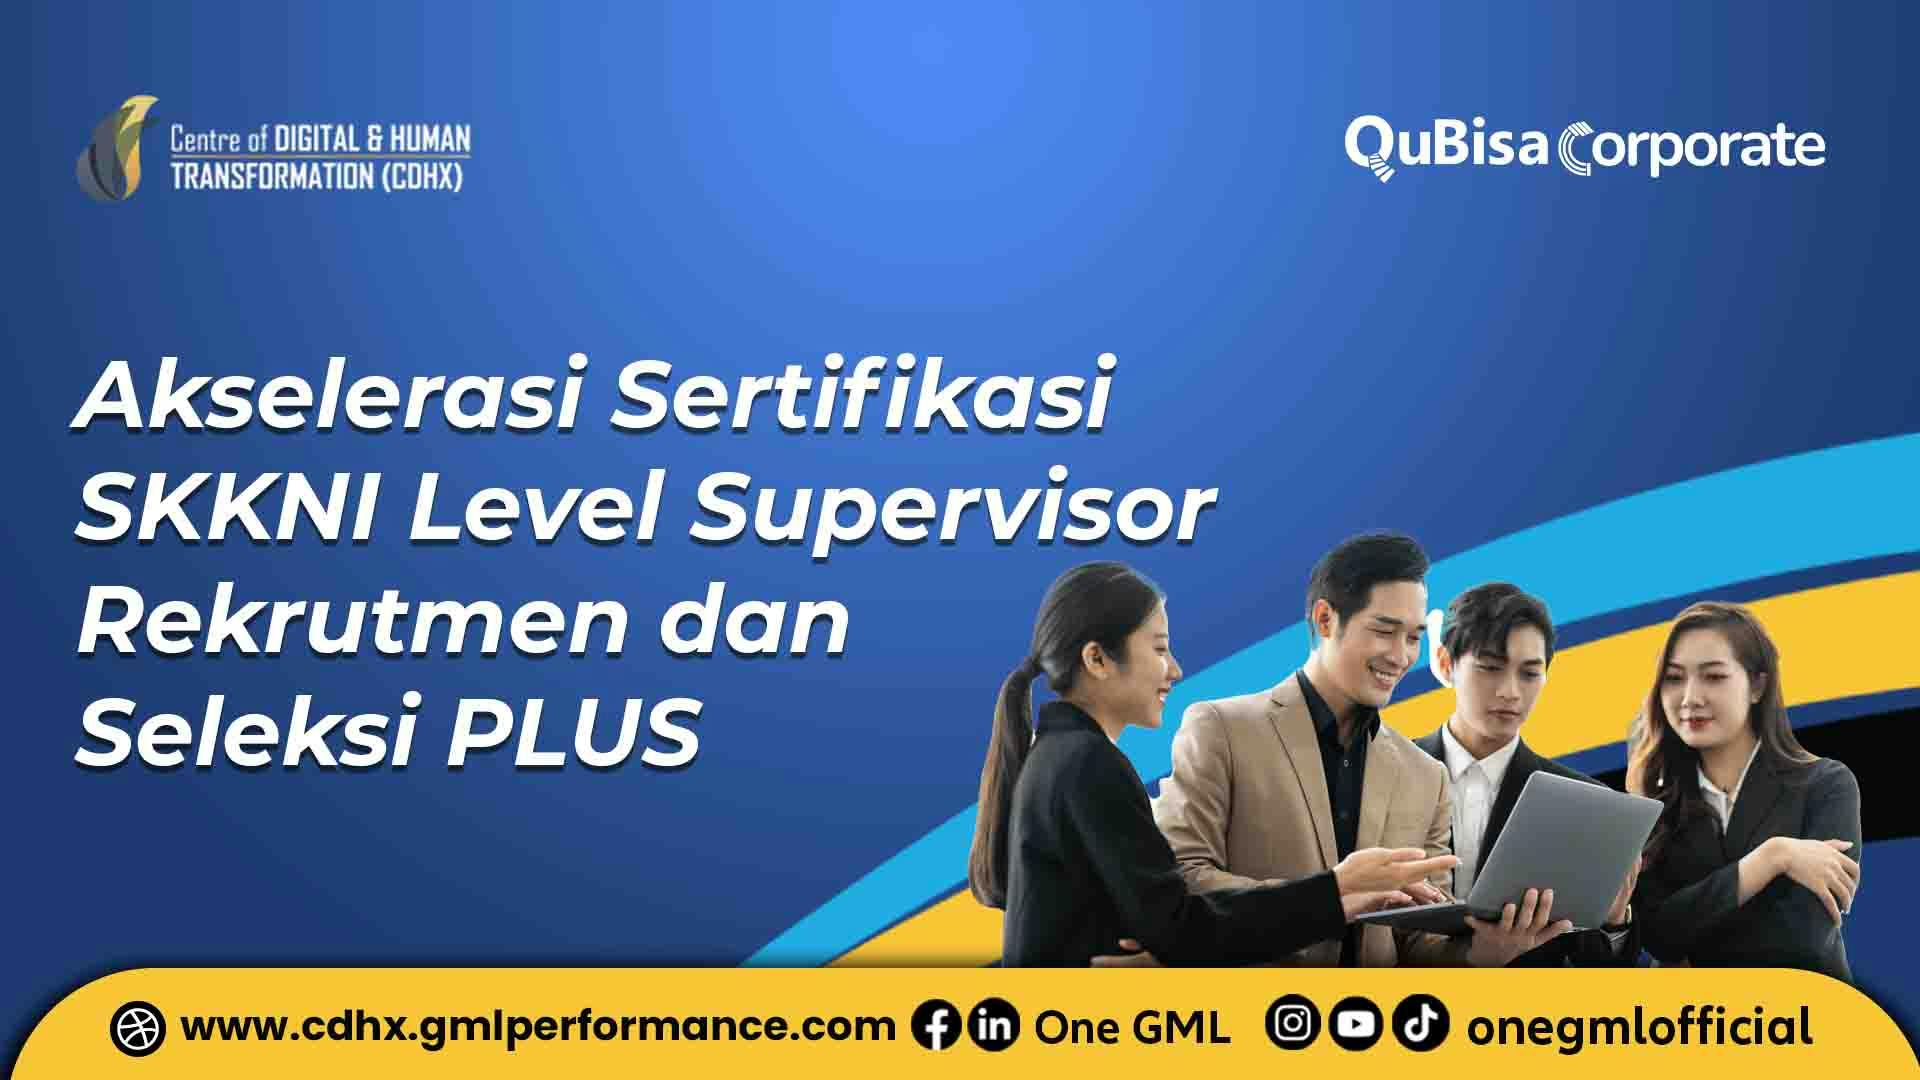 Akselerasi Sertifikasi SKKNI Level Supervisor Rekrutmen dan Seleksi PLUS.jpg